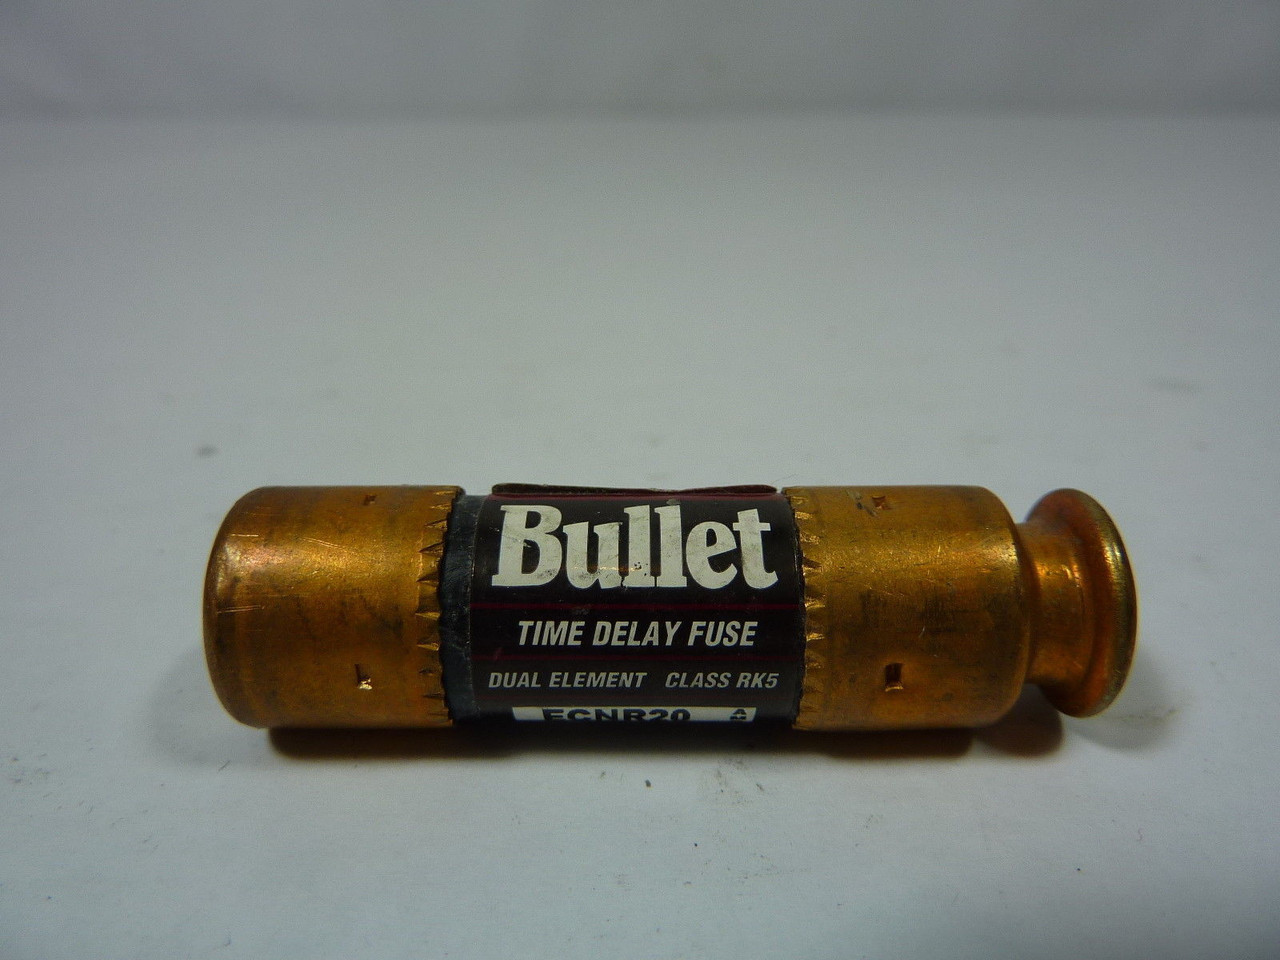 Bullet ECNR20 Time Delay Fuse 20A 250V USED